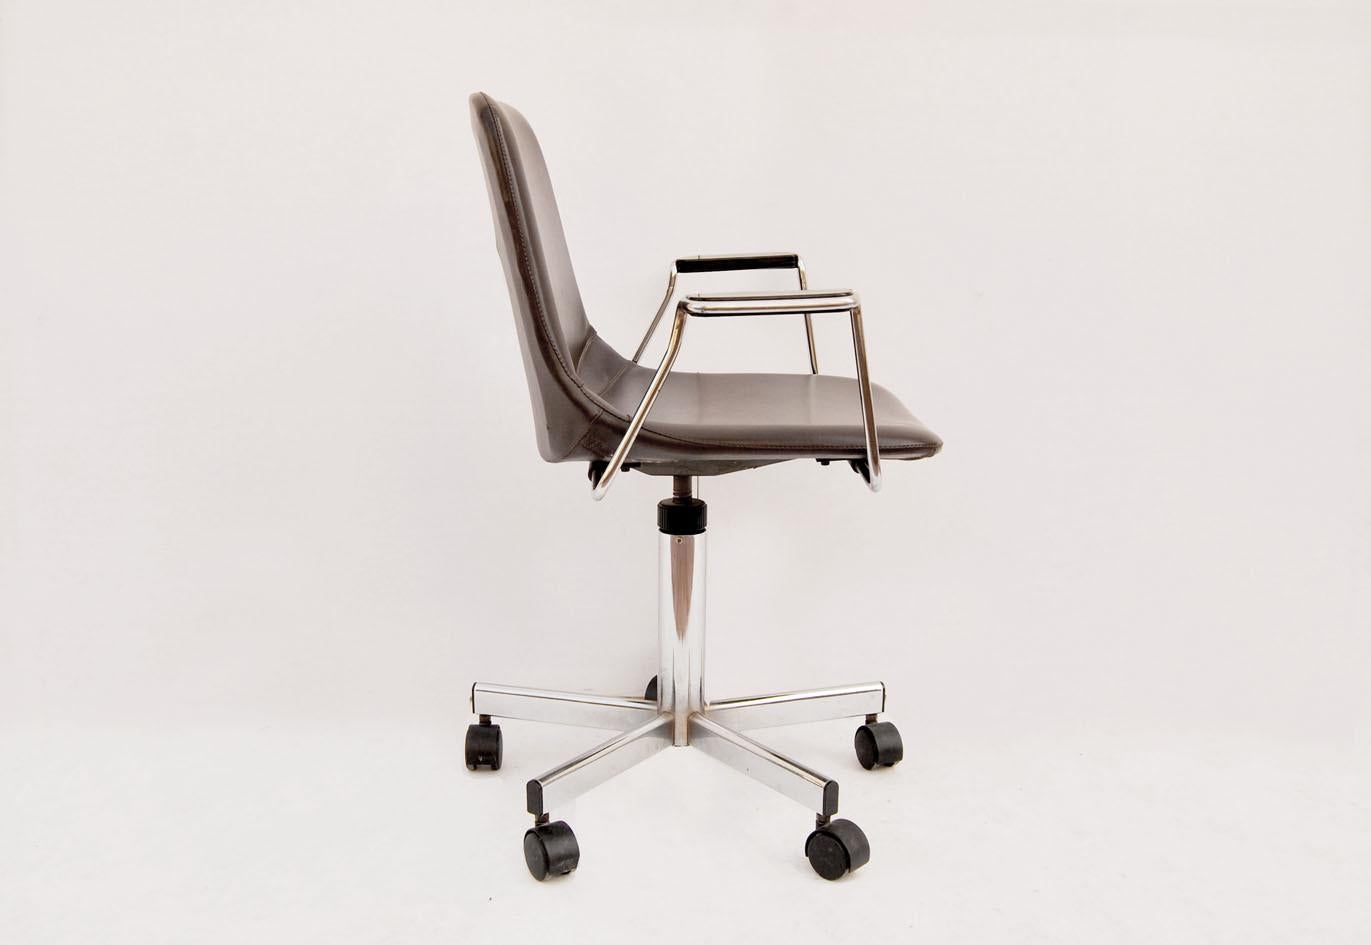 Magnifique chaise de bureau vintage des années 1980.
Fabriquée en Italie par MIM mim mobili spa, cette chaise a une structure en métal chromé avec assise et dossier intégrés, rembourrés et recouverts de similicuir marron foncé, avec des housses